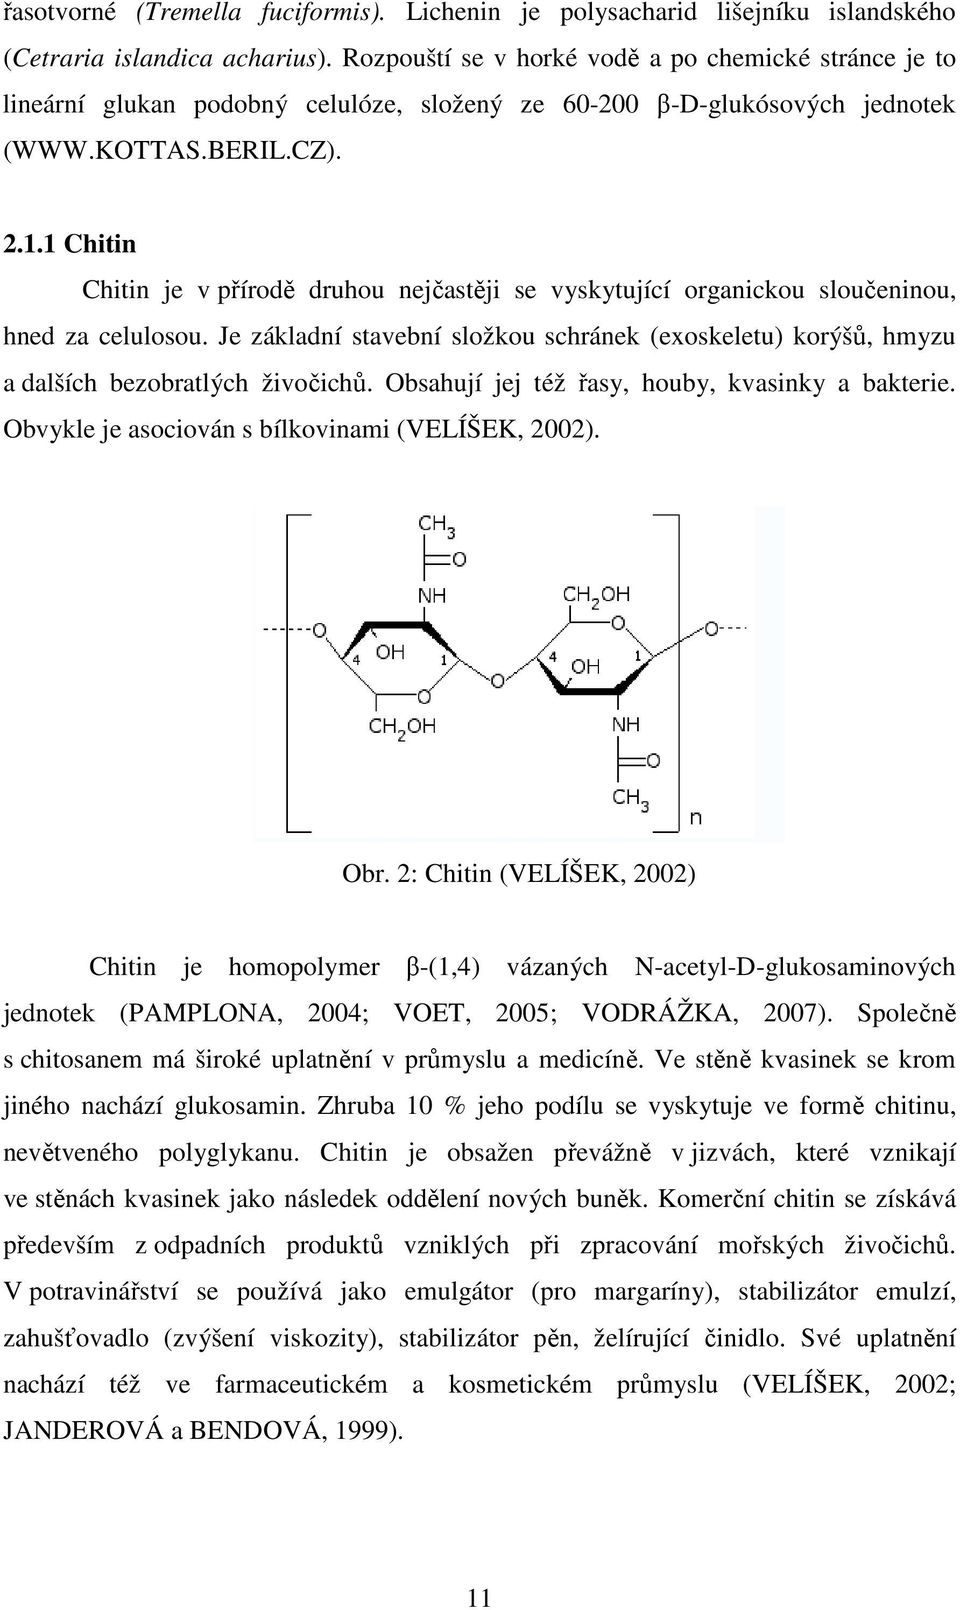 1 Chitin Chitin je v přírodě druhou nejčastěji se vyskytující organickou sloučeninou, hned za celulosou.